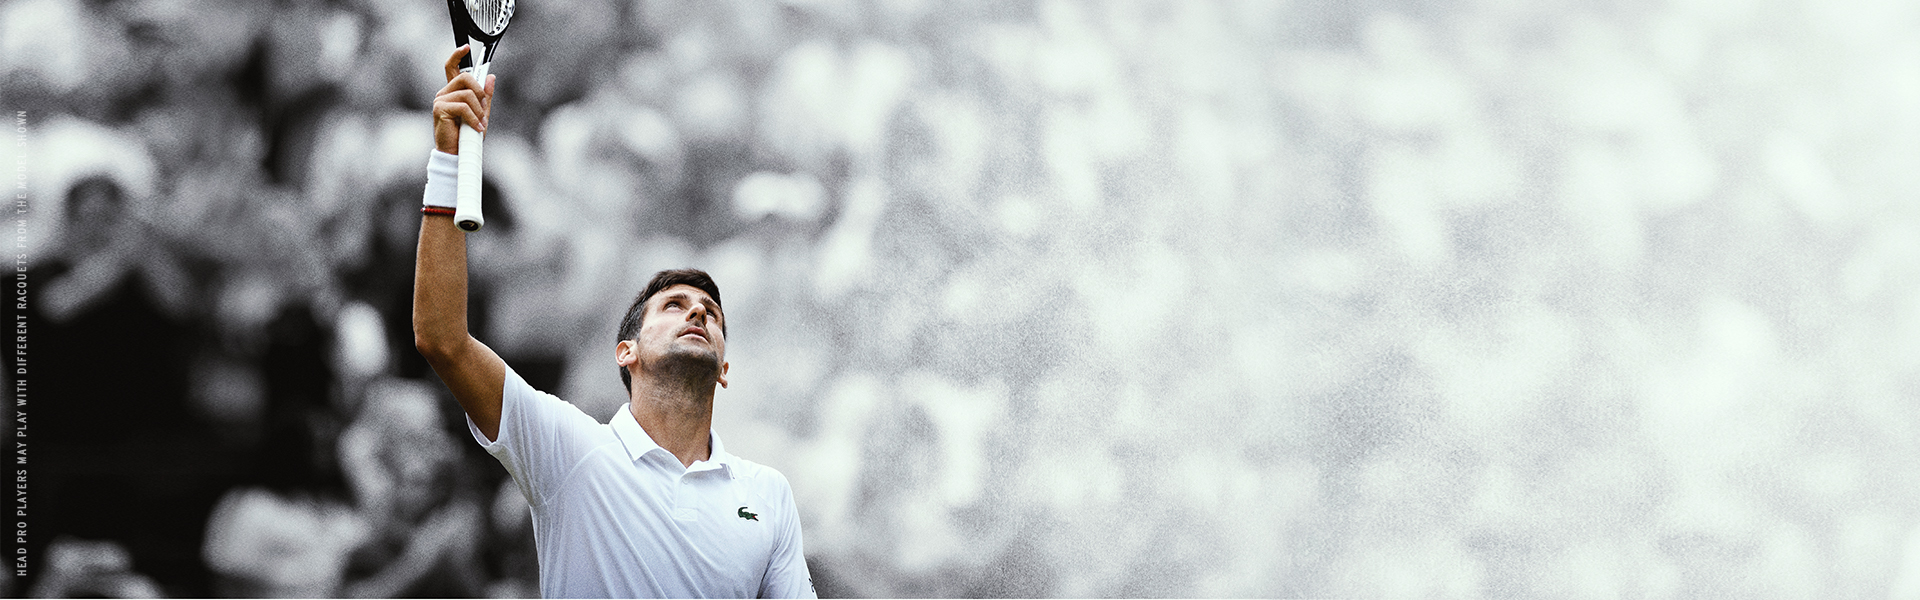 Novak Dojokovic breaks world No 1 record